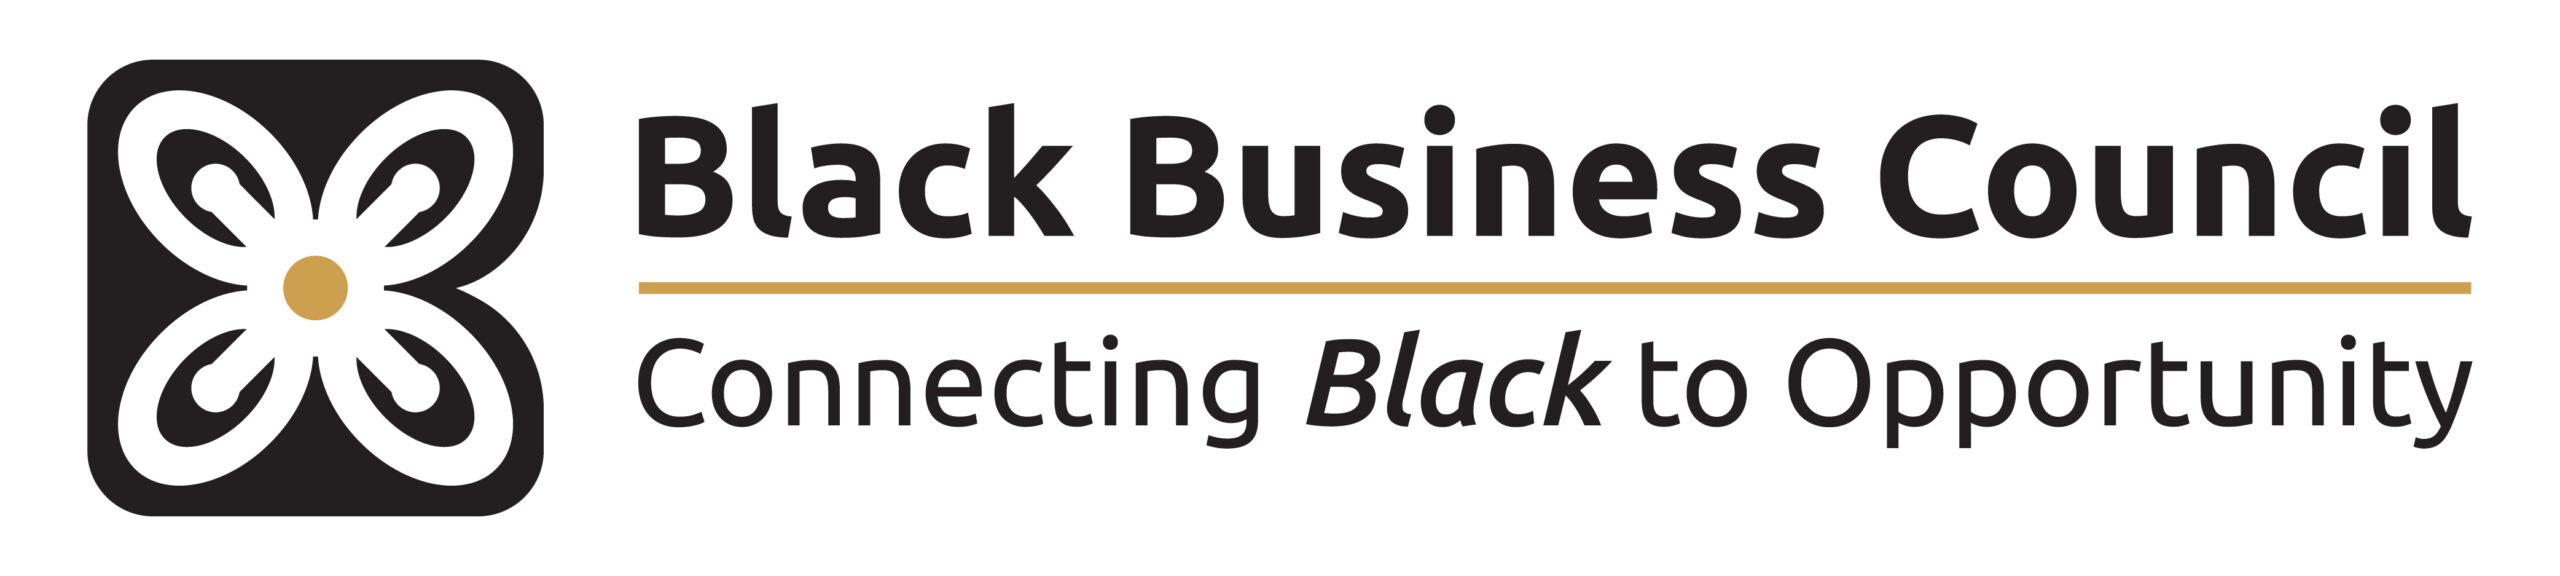 Black Business Council logo